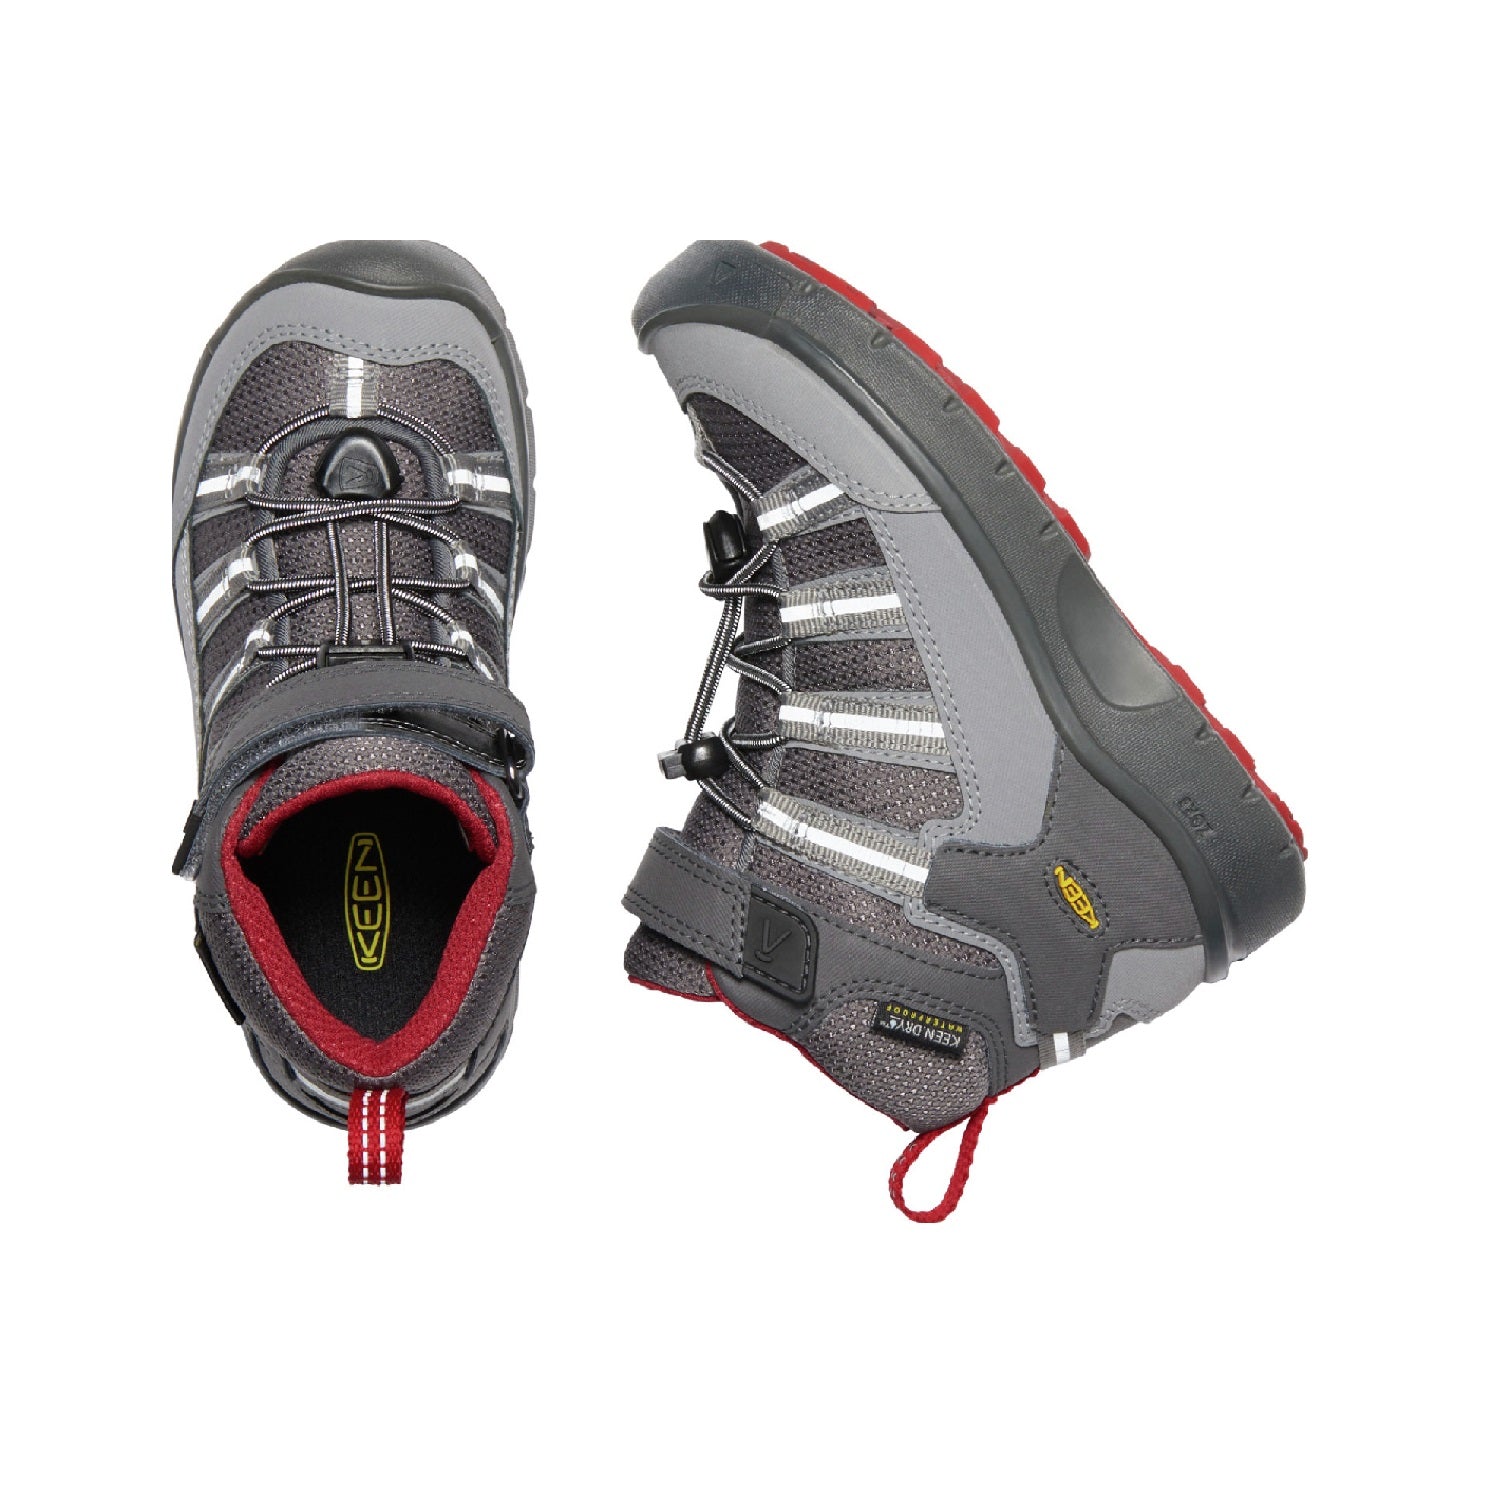 Little Kids' Hikeport II Sport Waterproof Boot - Style #1022783